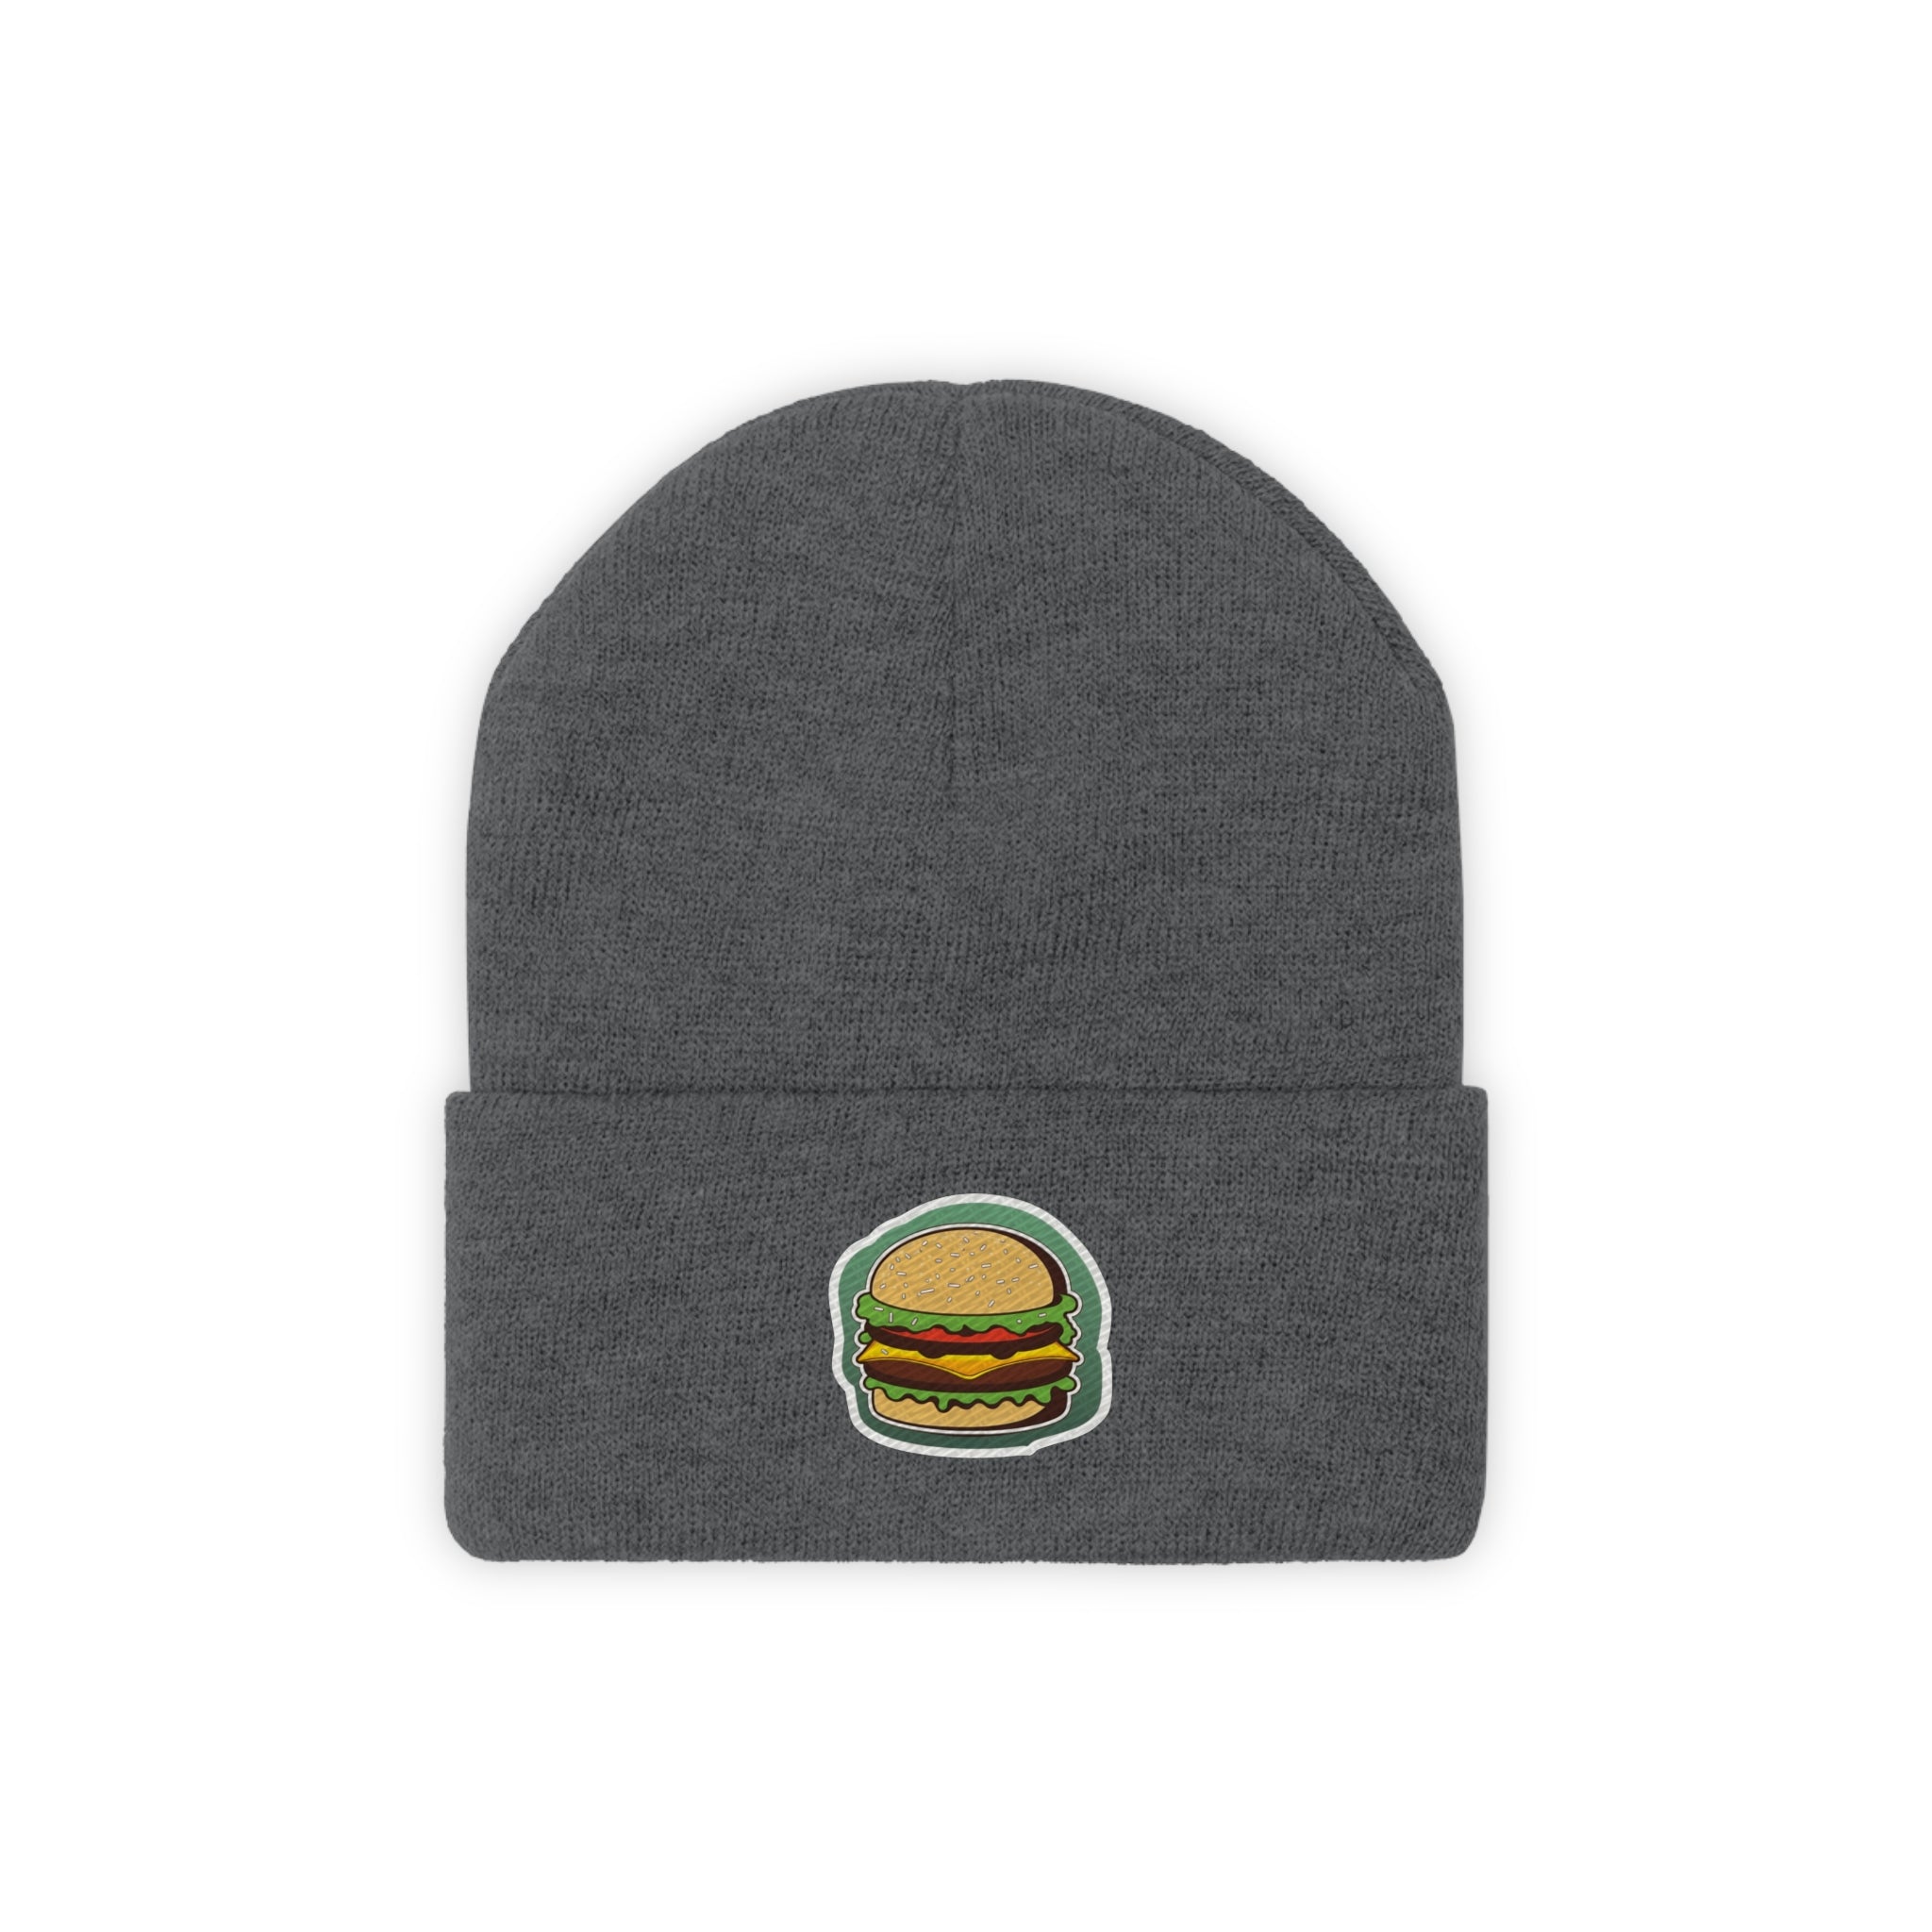 Knit Beanie - Burger Pop Art